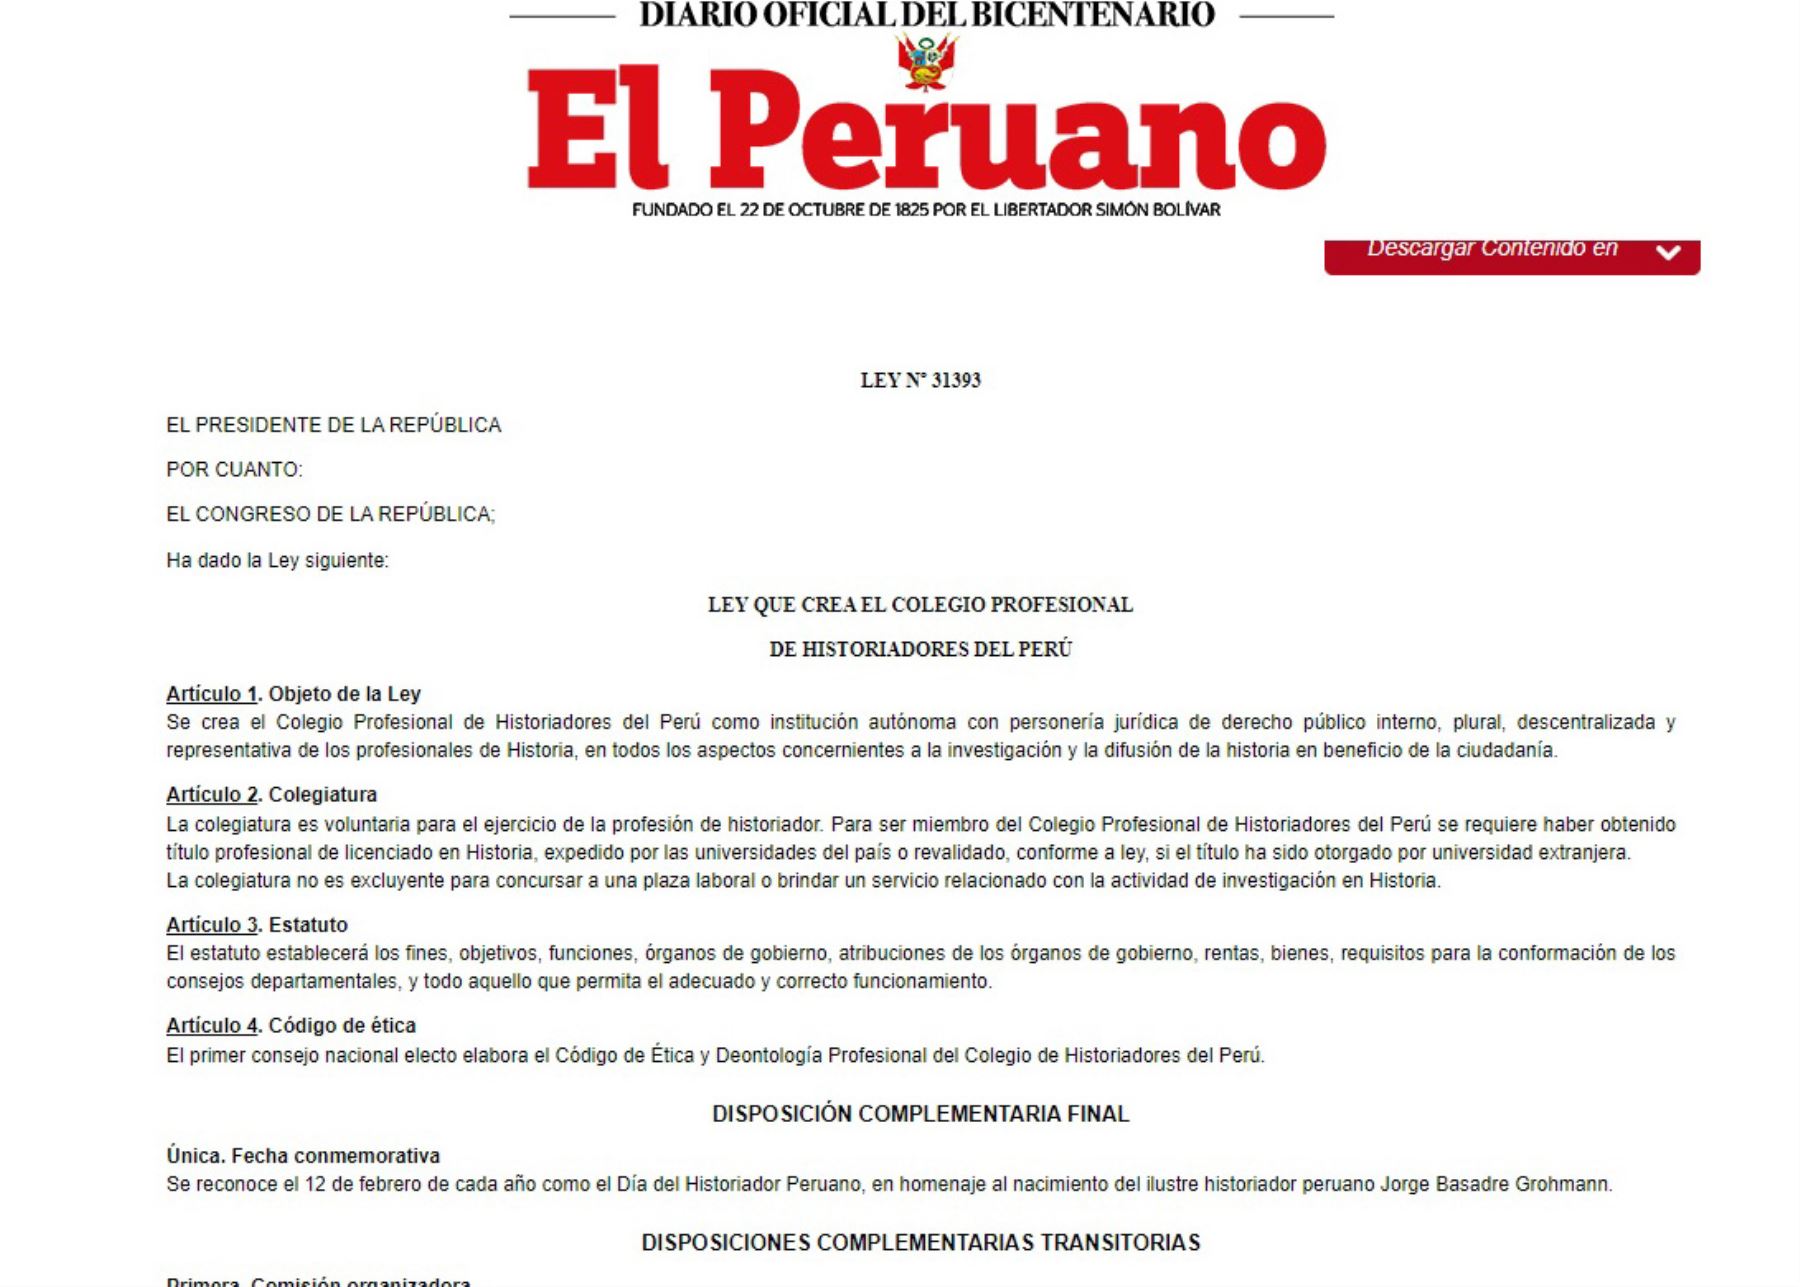 Publican ley que crea el Colegio Profesional de Historiadores del Perú.